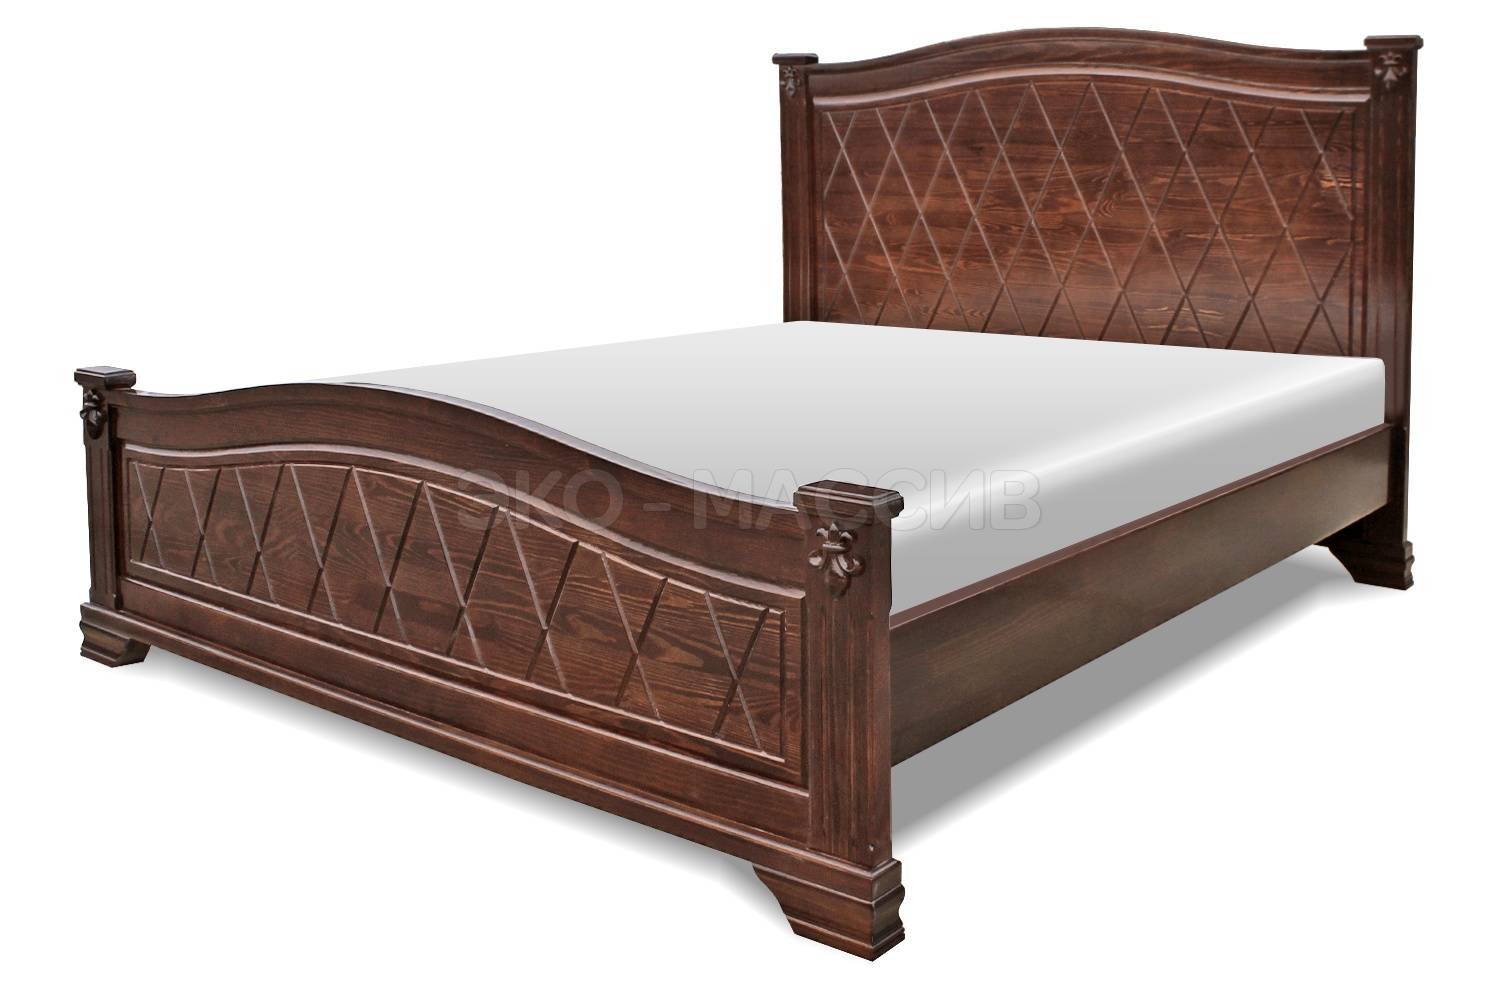 Кровати фокина из массива - натуральность и стиль. деревянные кровати фабрики фокин